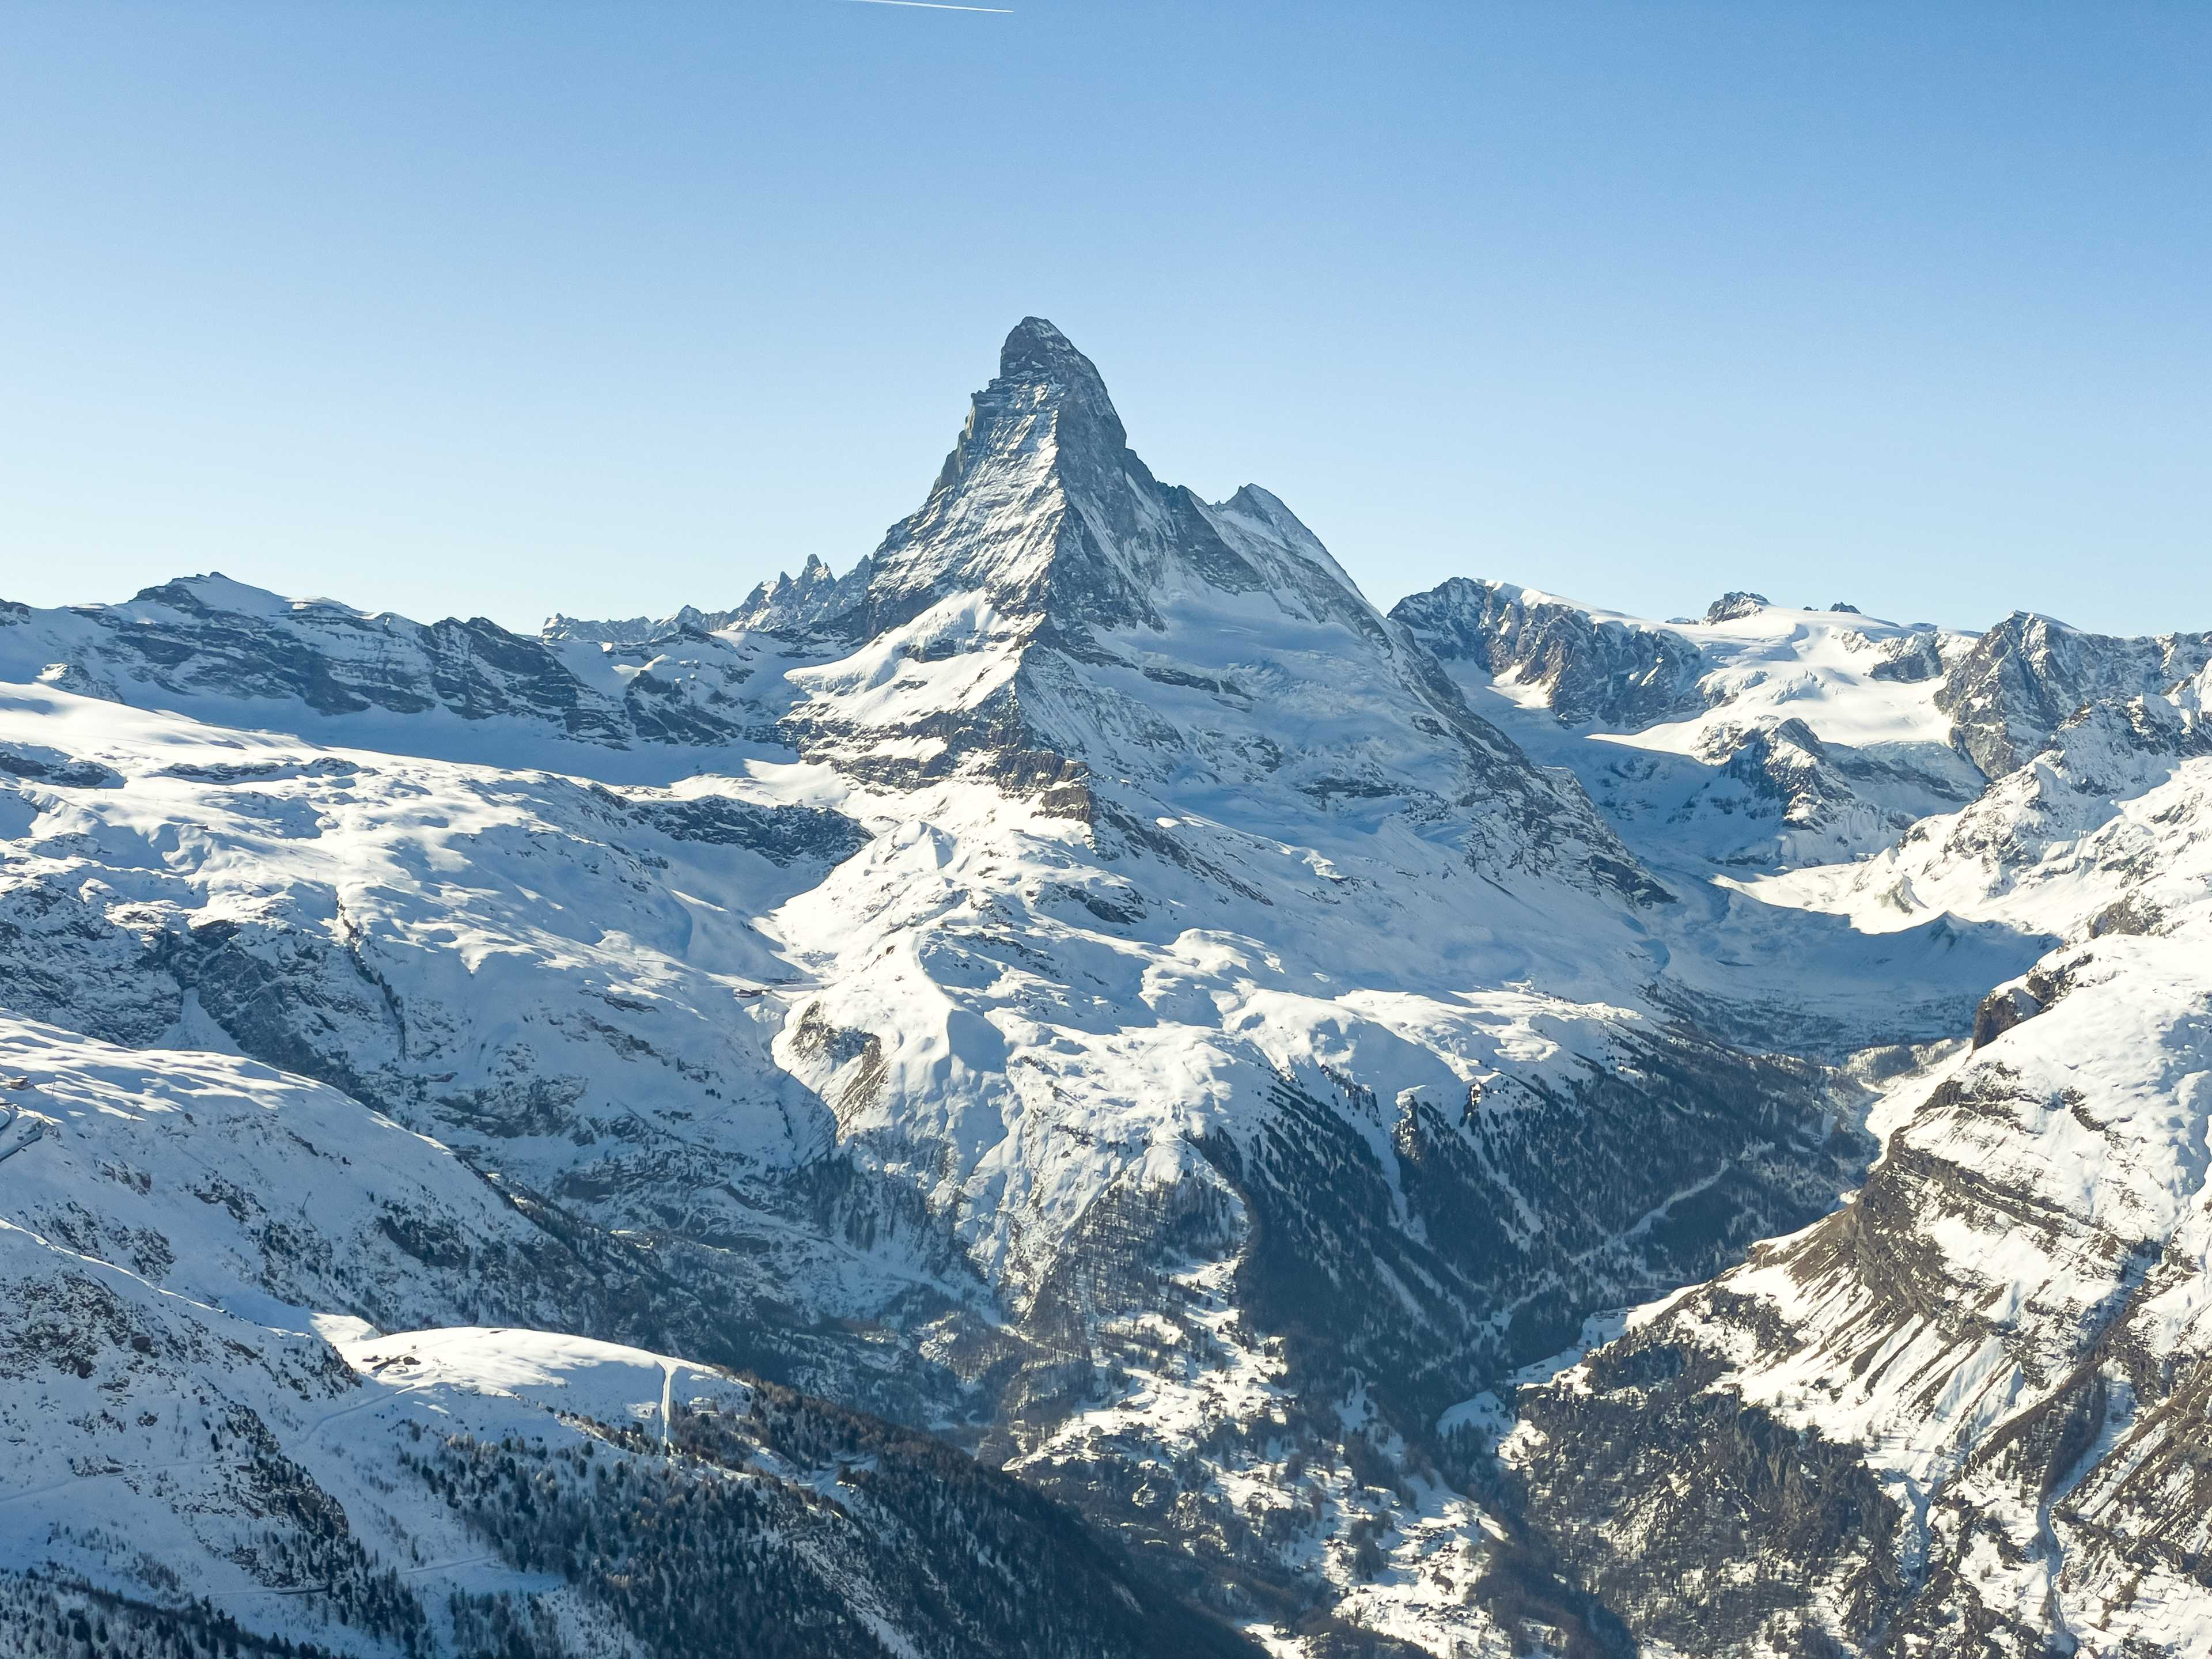 I'm not going to get bored with this. Matterhorn (4478 m a.s.l.), Zermatt